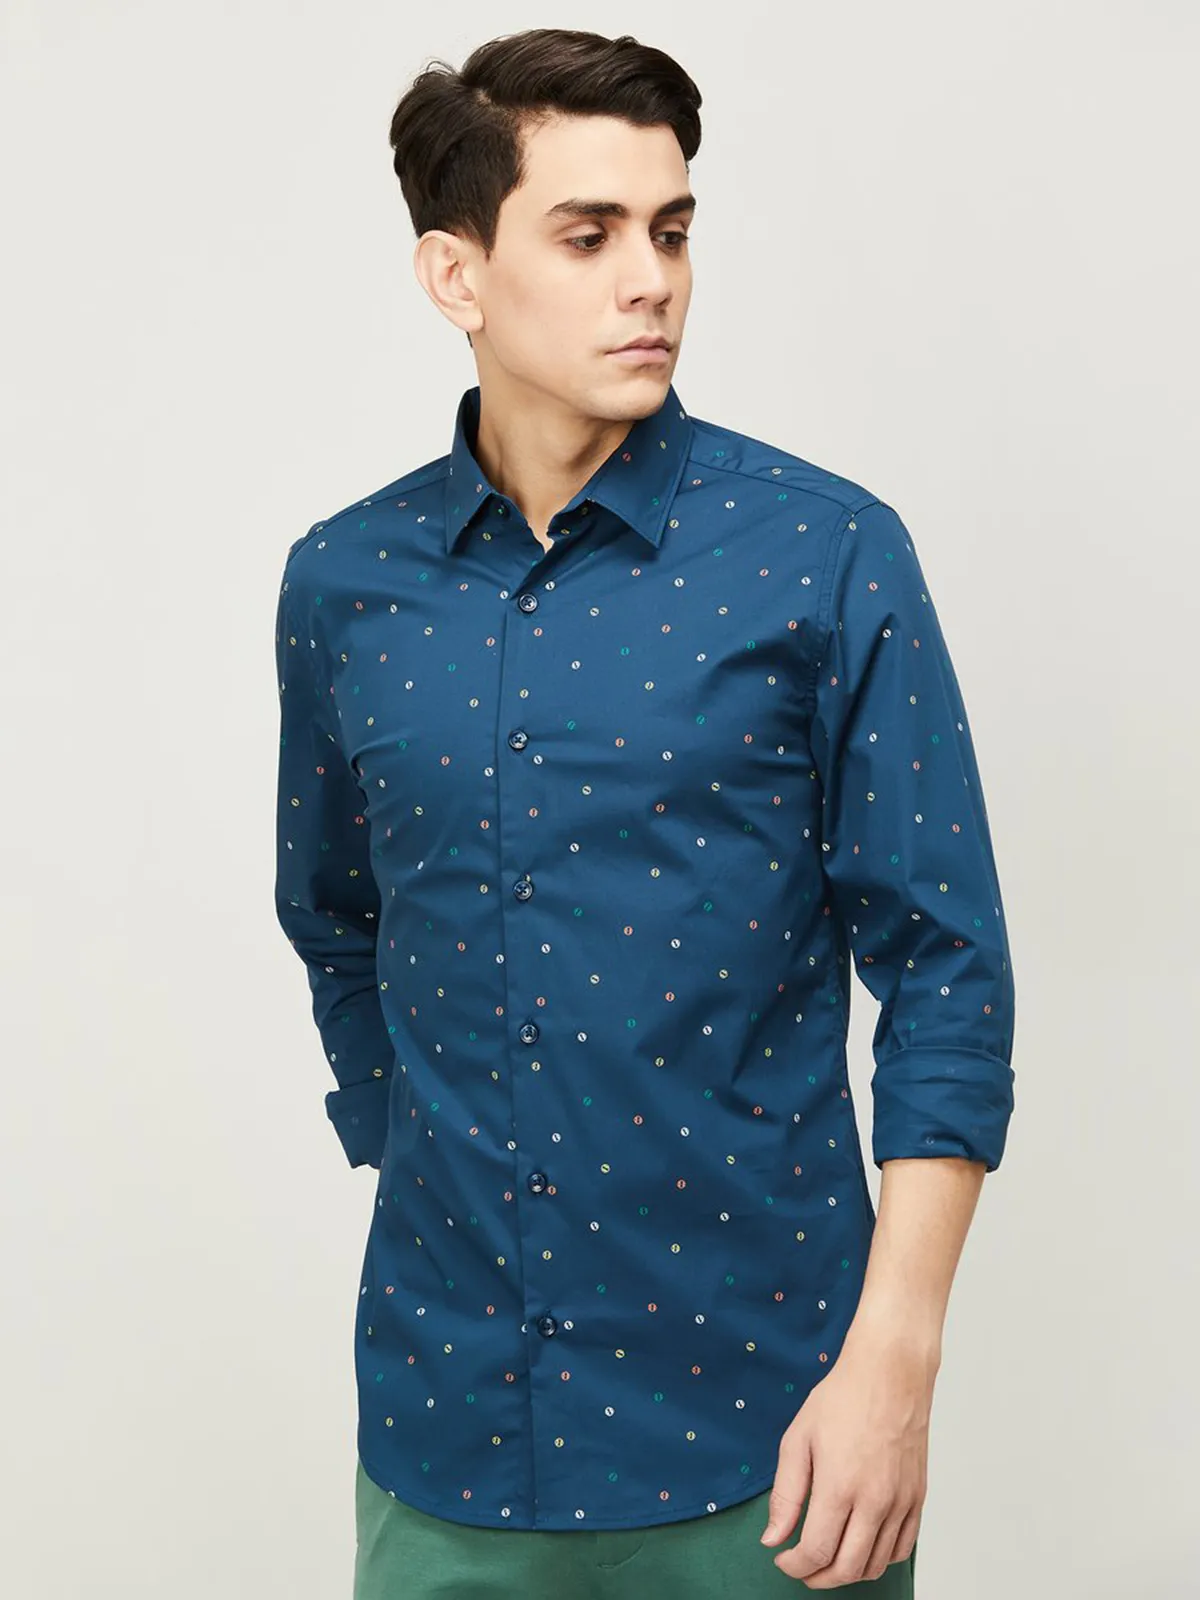 UCB cotton blue printed slim fit shirt